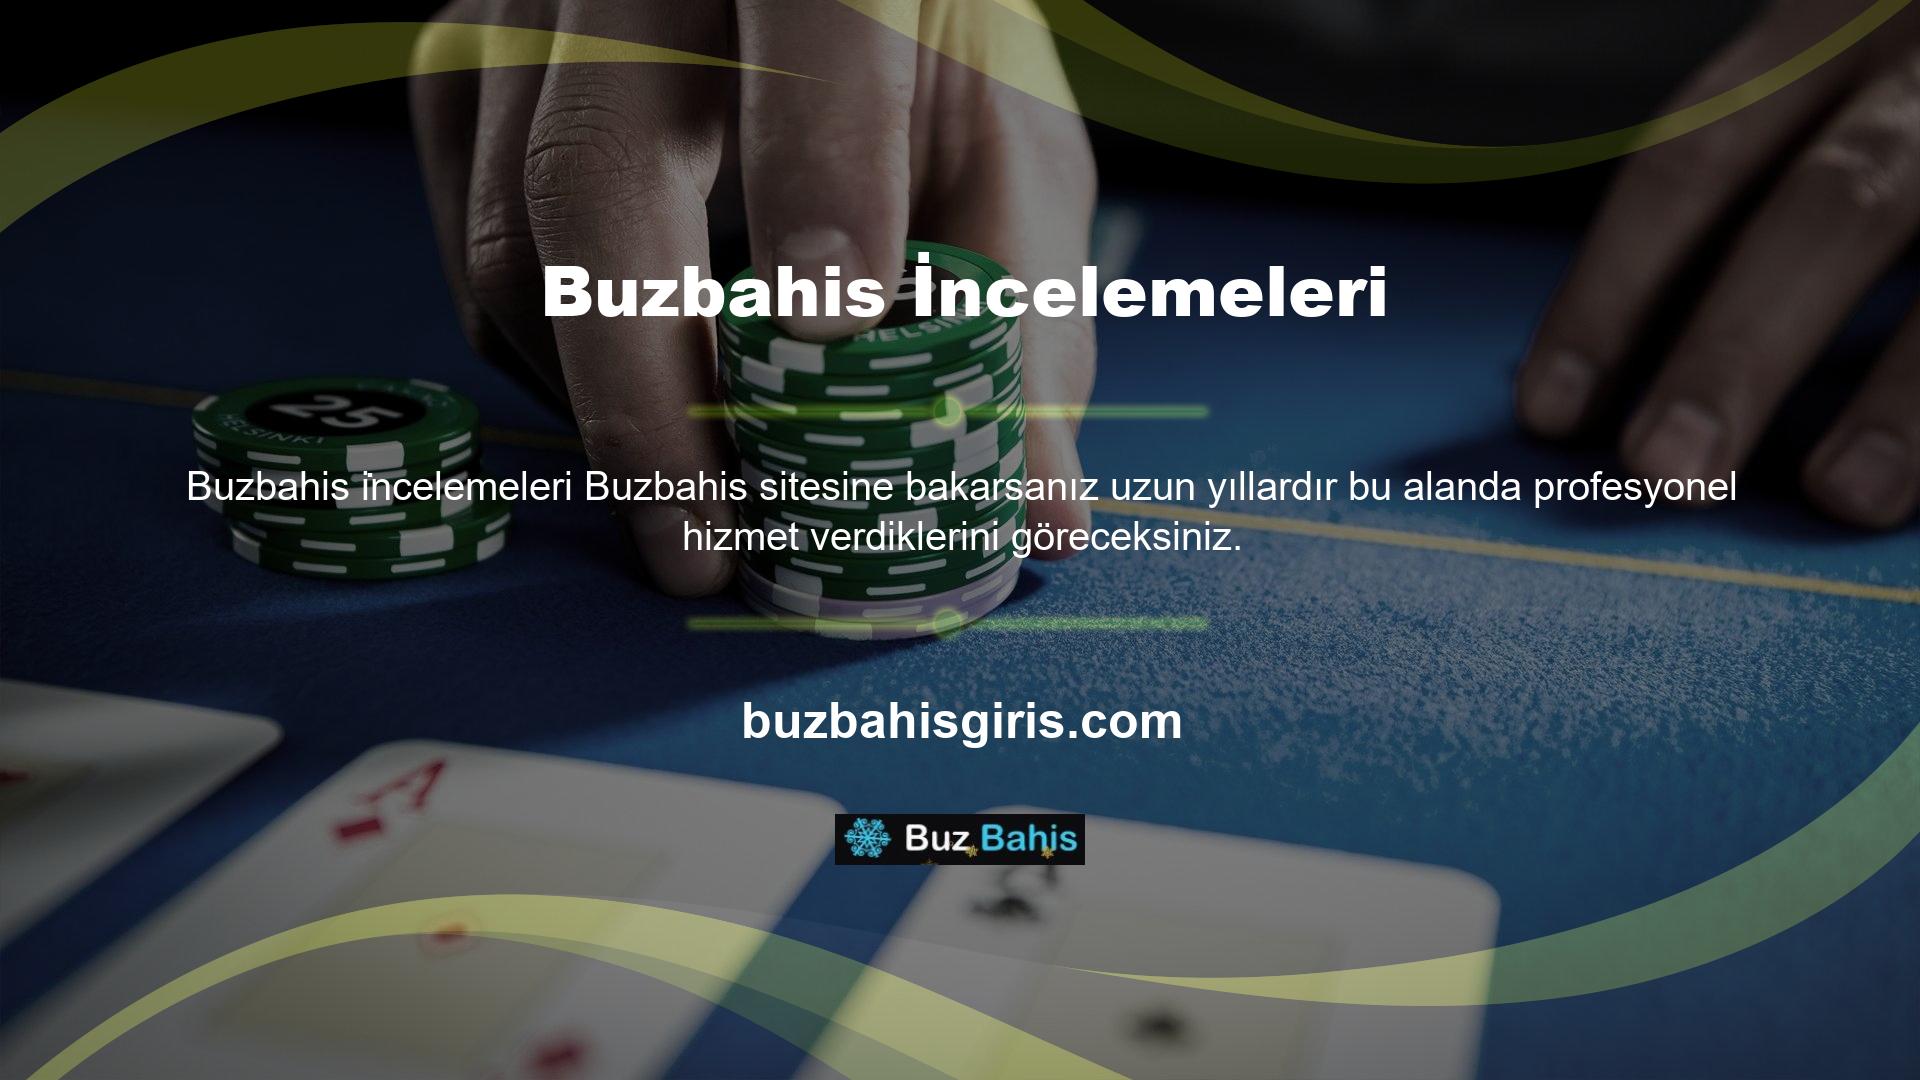 Canlı spor bahisleri ve dünyanın en ünlü casino oyunlarını Avrupa'nın hemen her ülkesinde oynama imkanı sunan Buzbahis online bahis ofisi, ülkemizde faaliyetlerine devam etme kararı almıştır